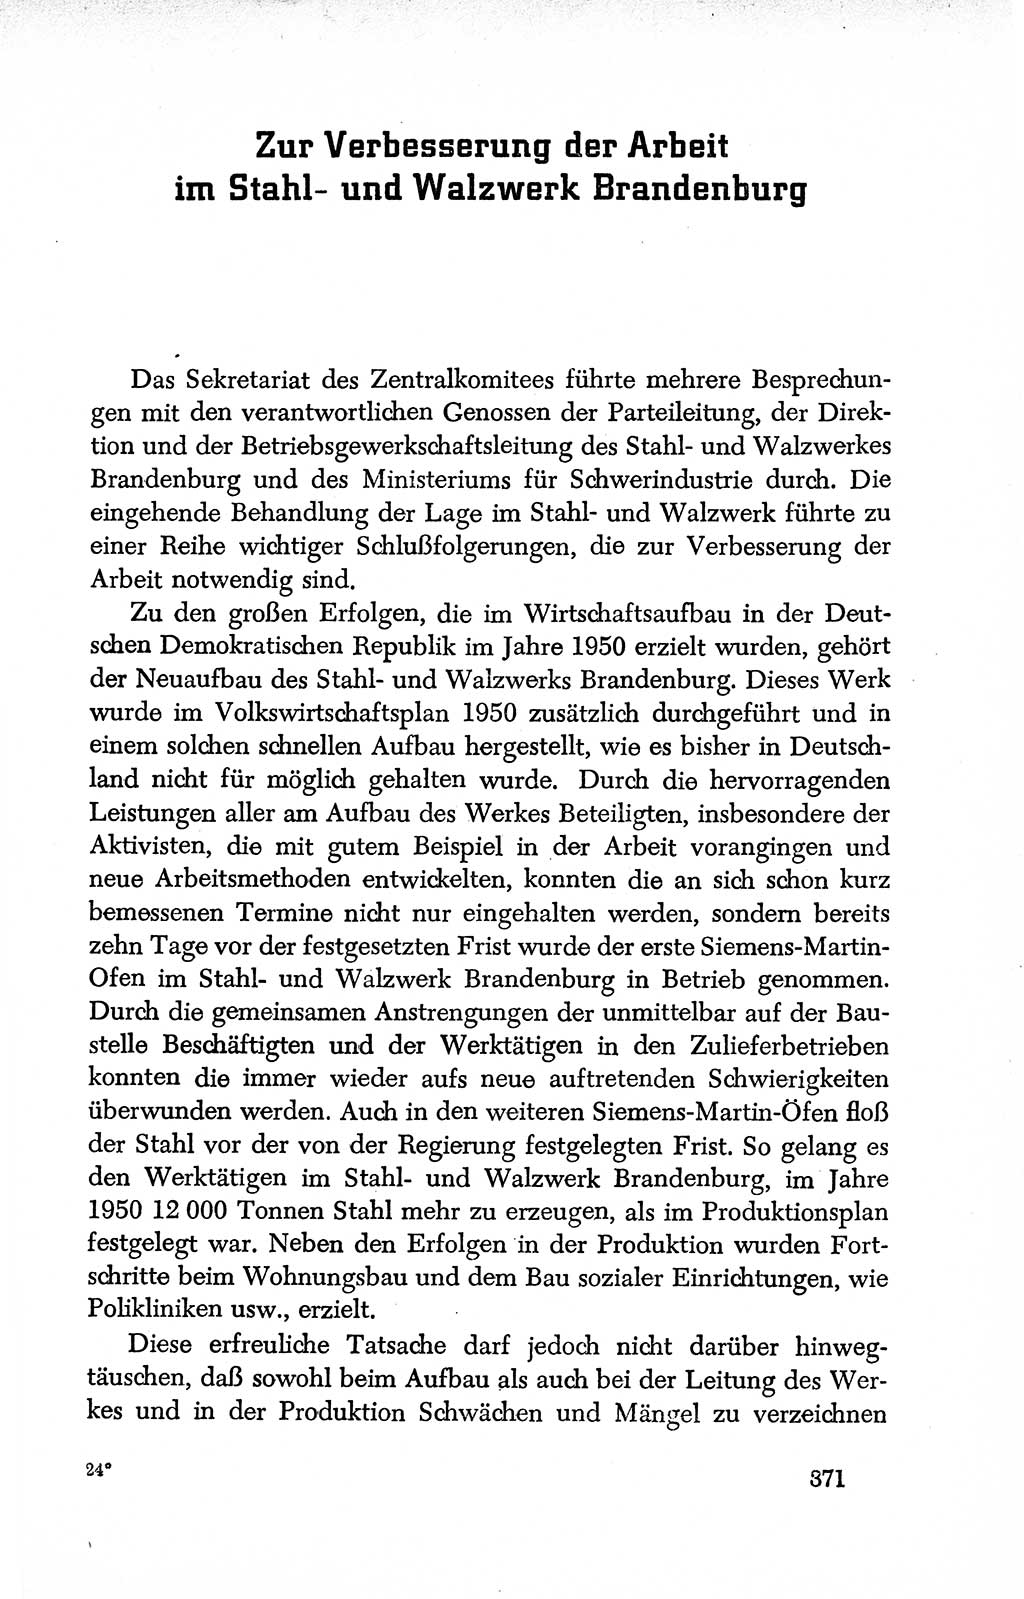 Dokumente der Sozialistischen Einheitspartei Deutschlands (SED) [Deutsche Demokratische Republik (DDR)] 1950-1952, Seite 371 (Dok. SED DDR 1950-1952, S. 371)